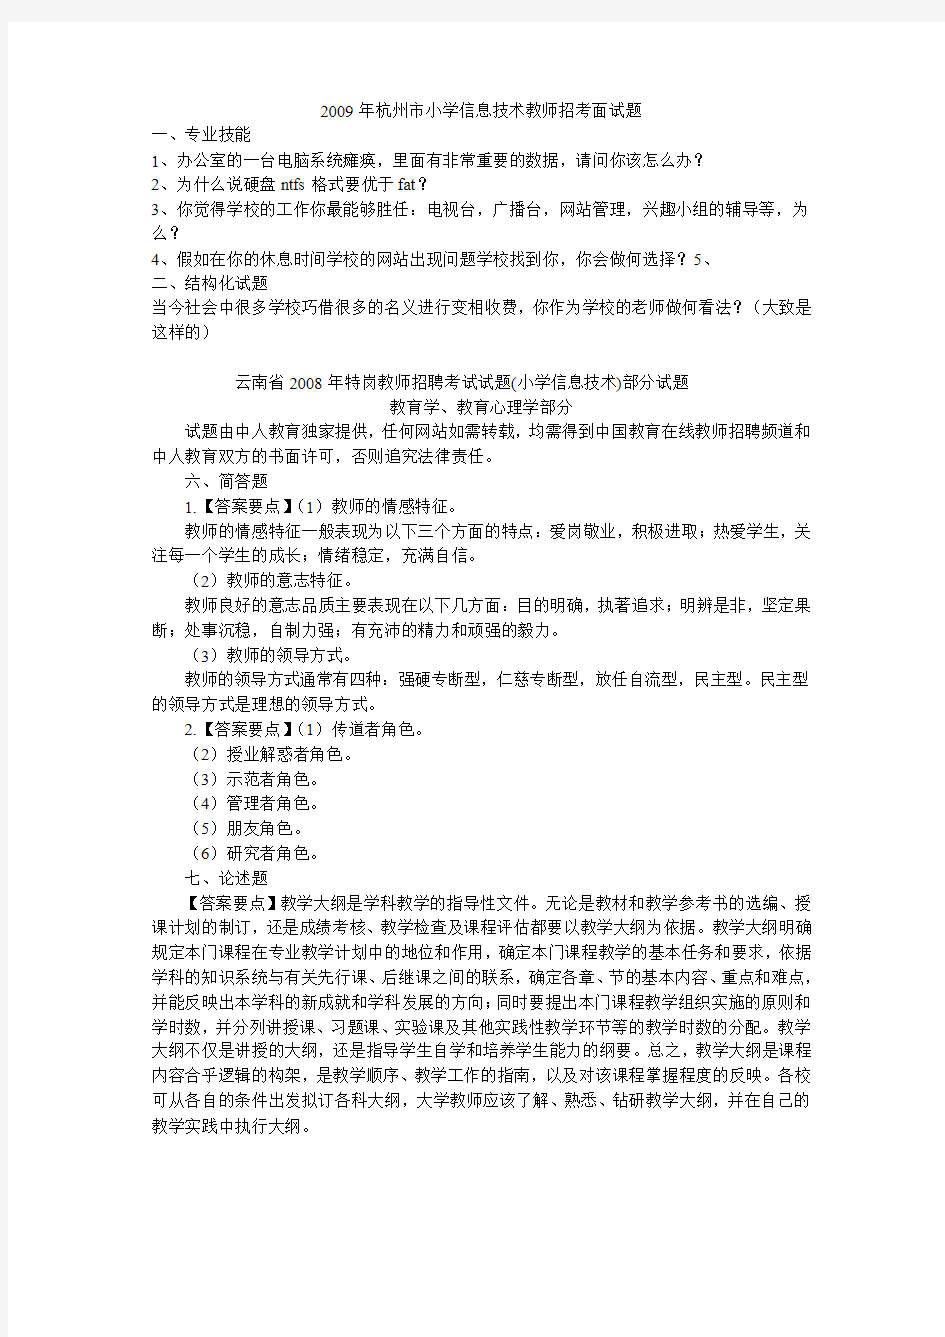 杭州市小学信息技术教师招考面试题